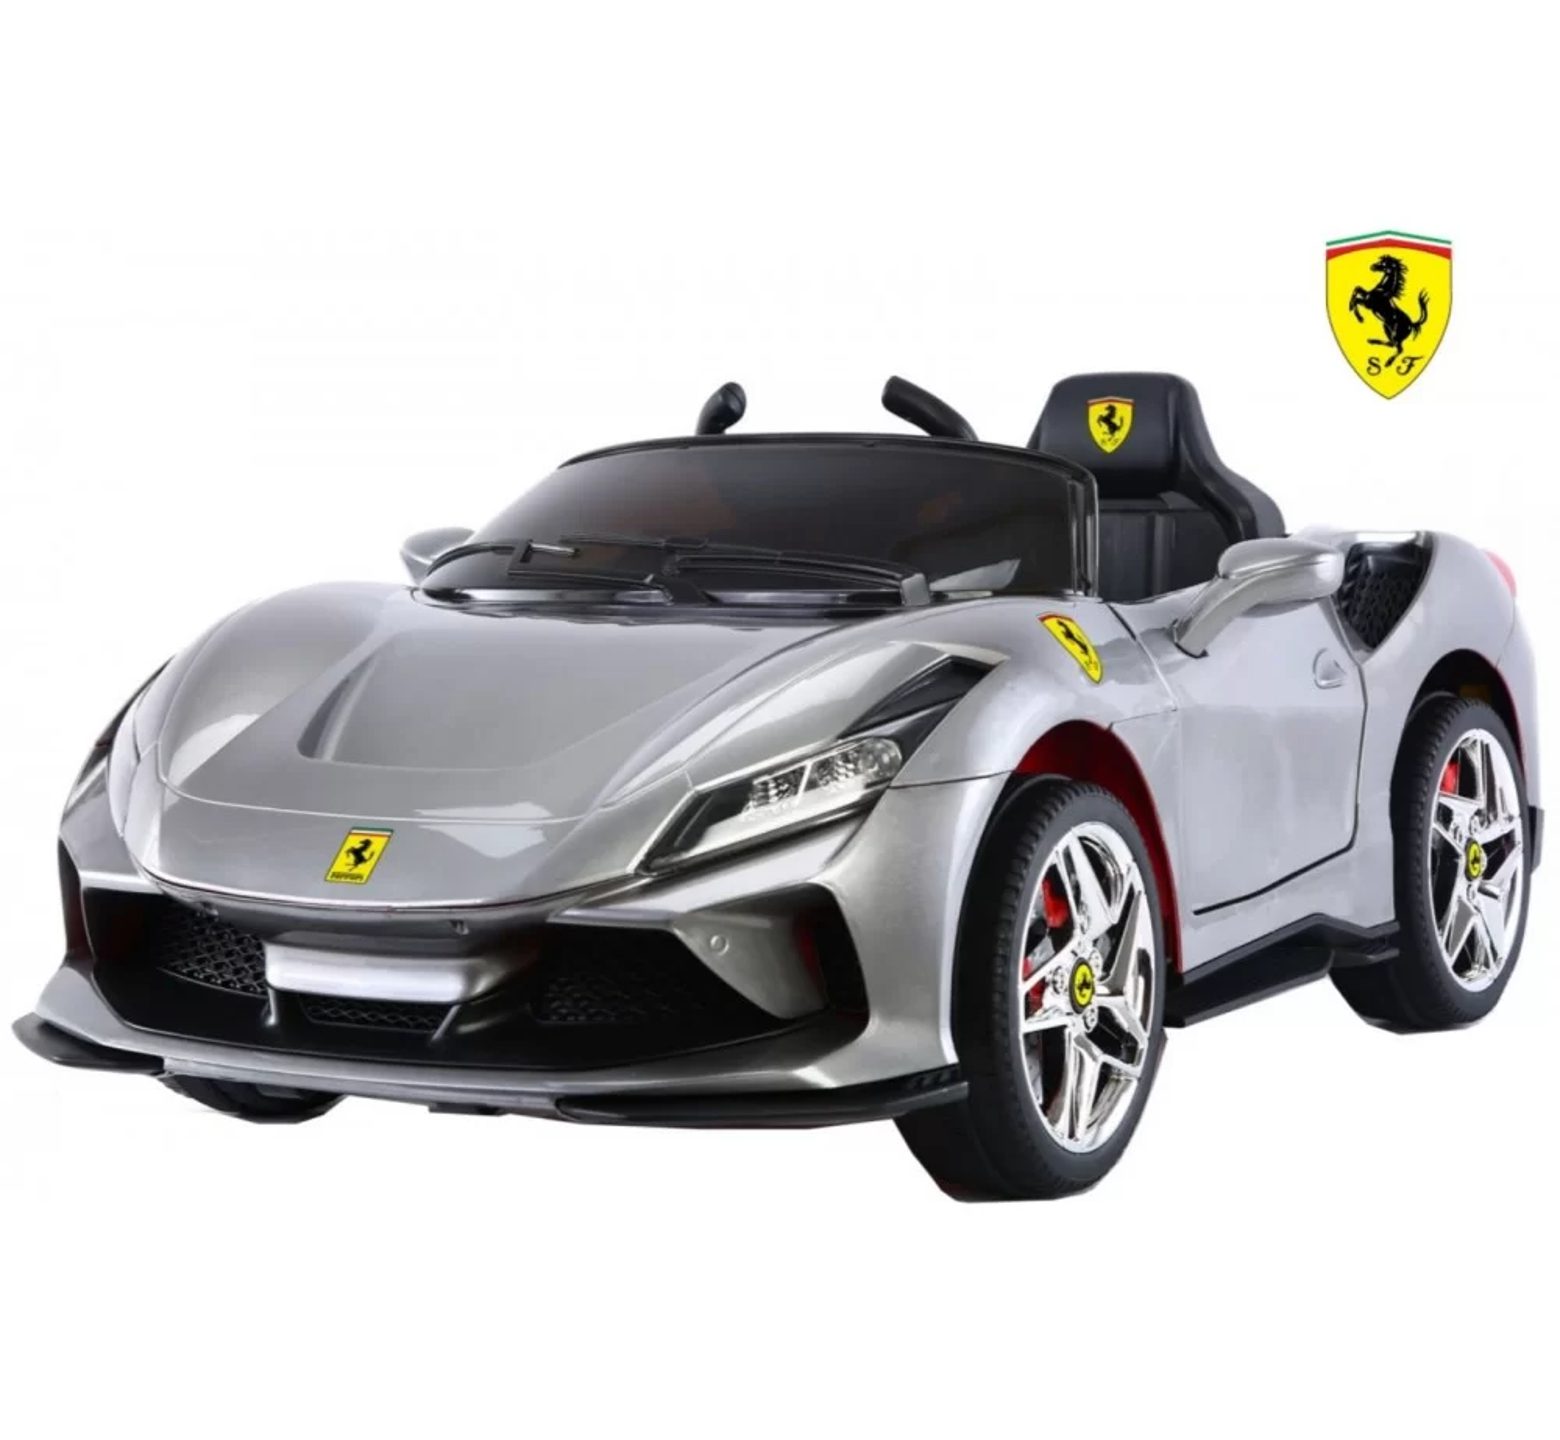 Ηλεκτροκίνητο Παιδικό Αυτοκίνητο 12V Licensed Ferrari με 4 μοτέρ σε ασημί χρώμα